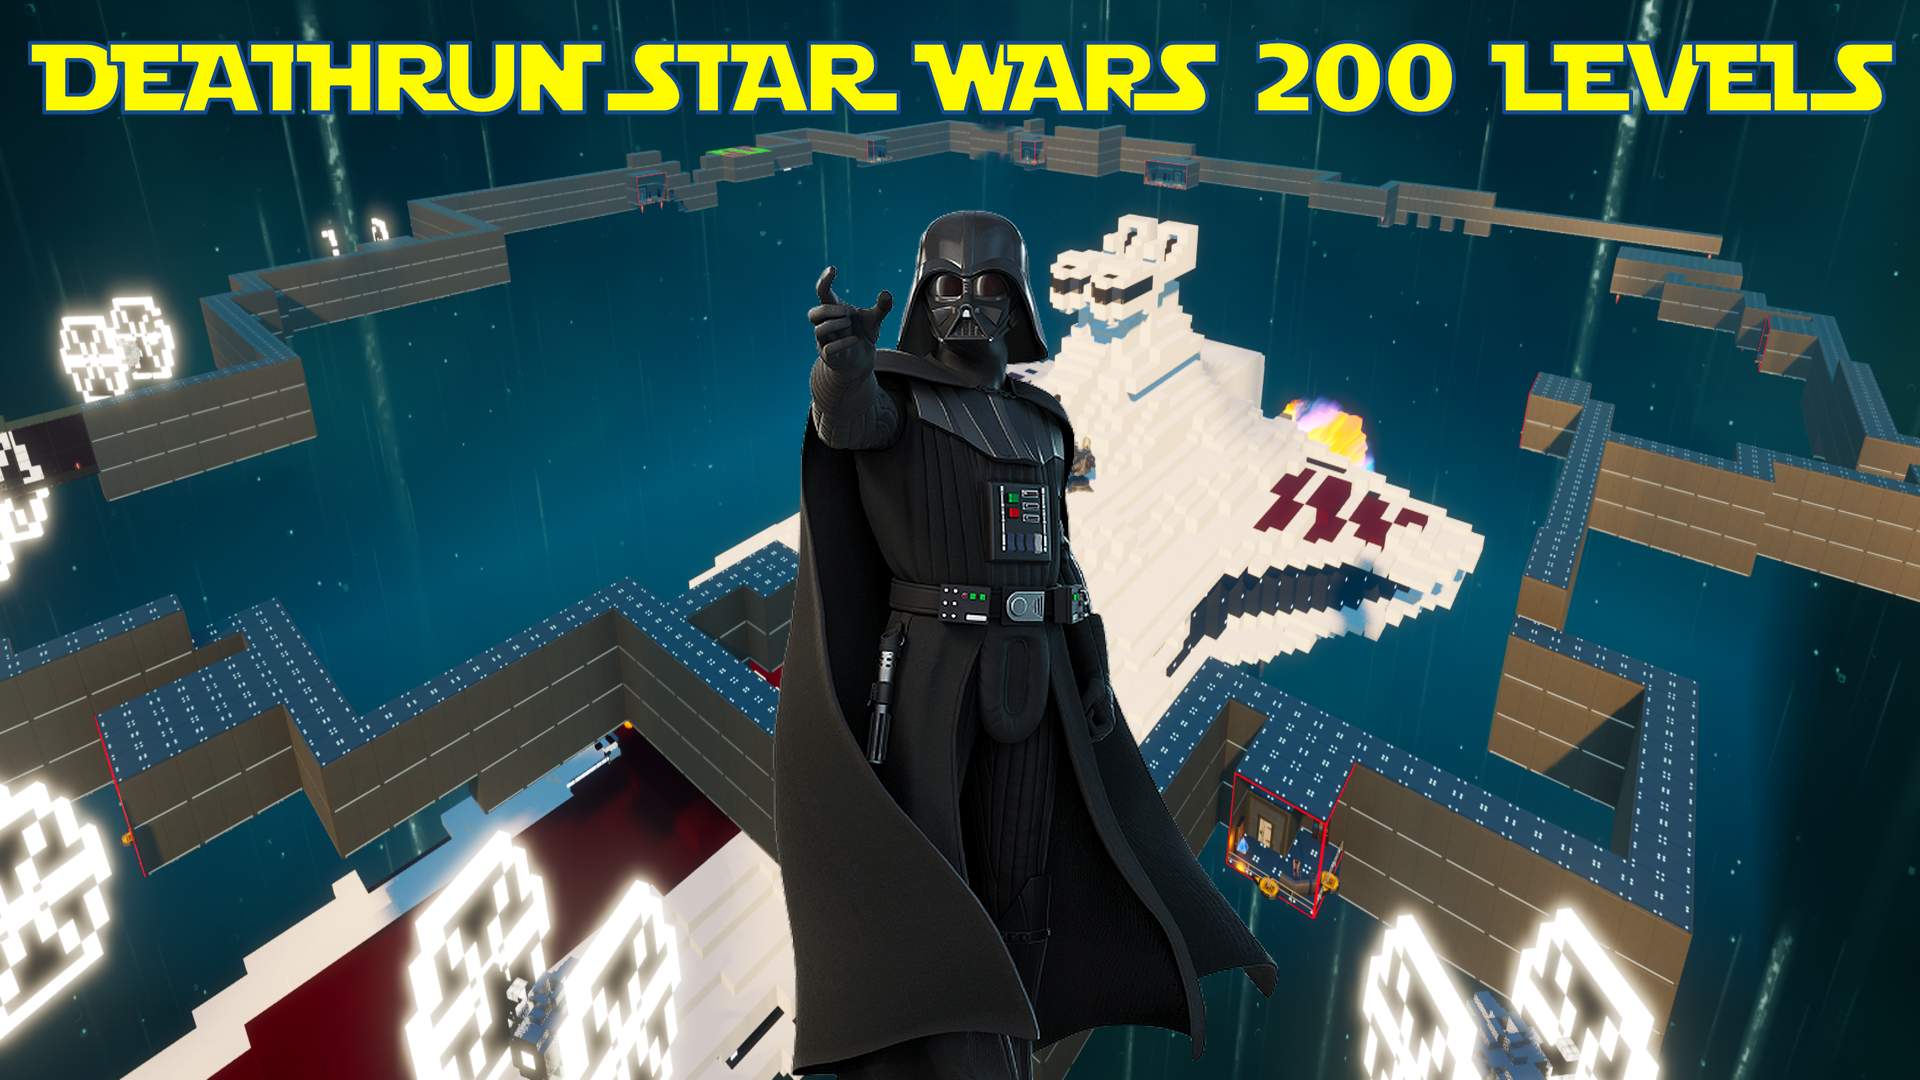 Deathrun Star Wars 200 levels